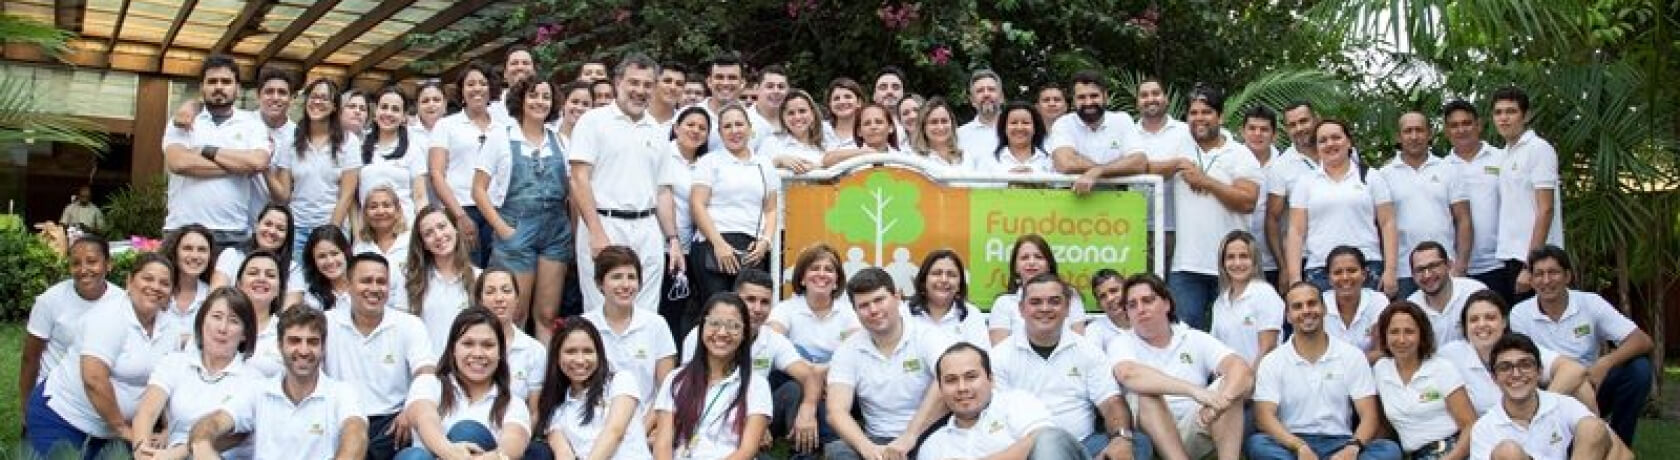 fundacion-amazonas-sostenible